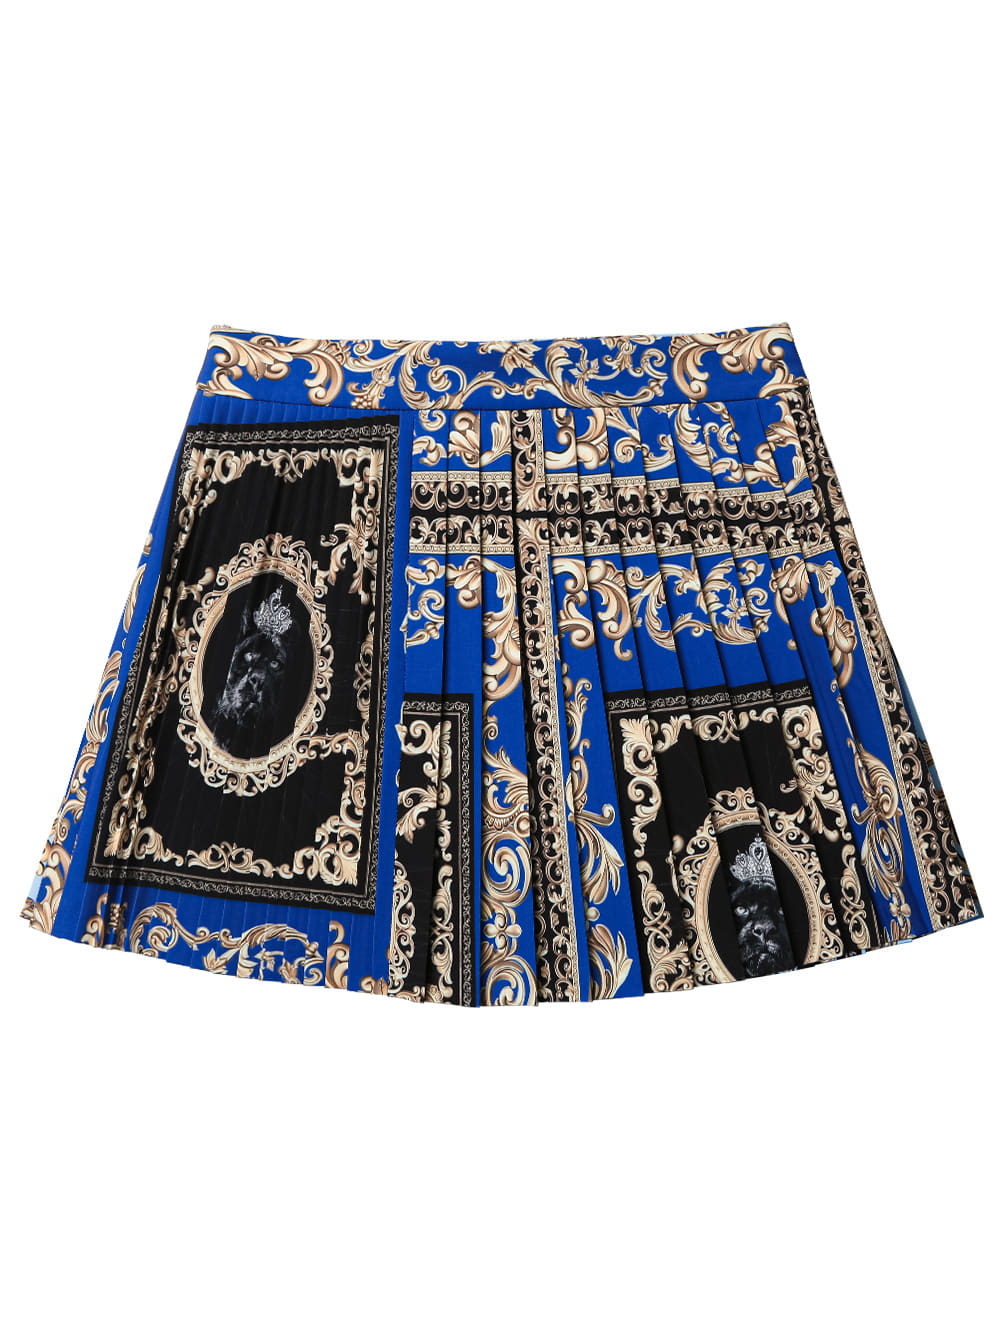 UTAA Buckingham Short Skirt : Royal Blue  (UC2SKF231BL)